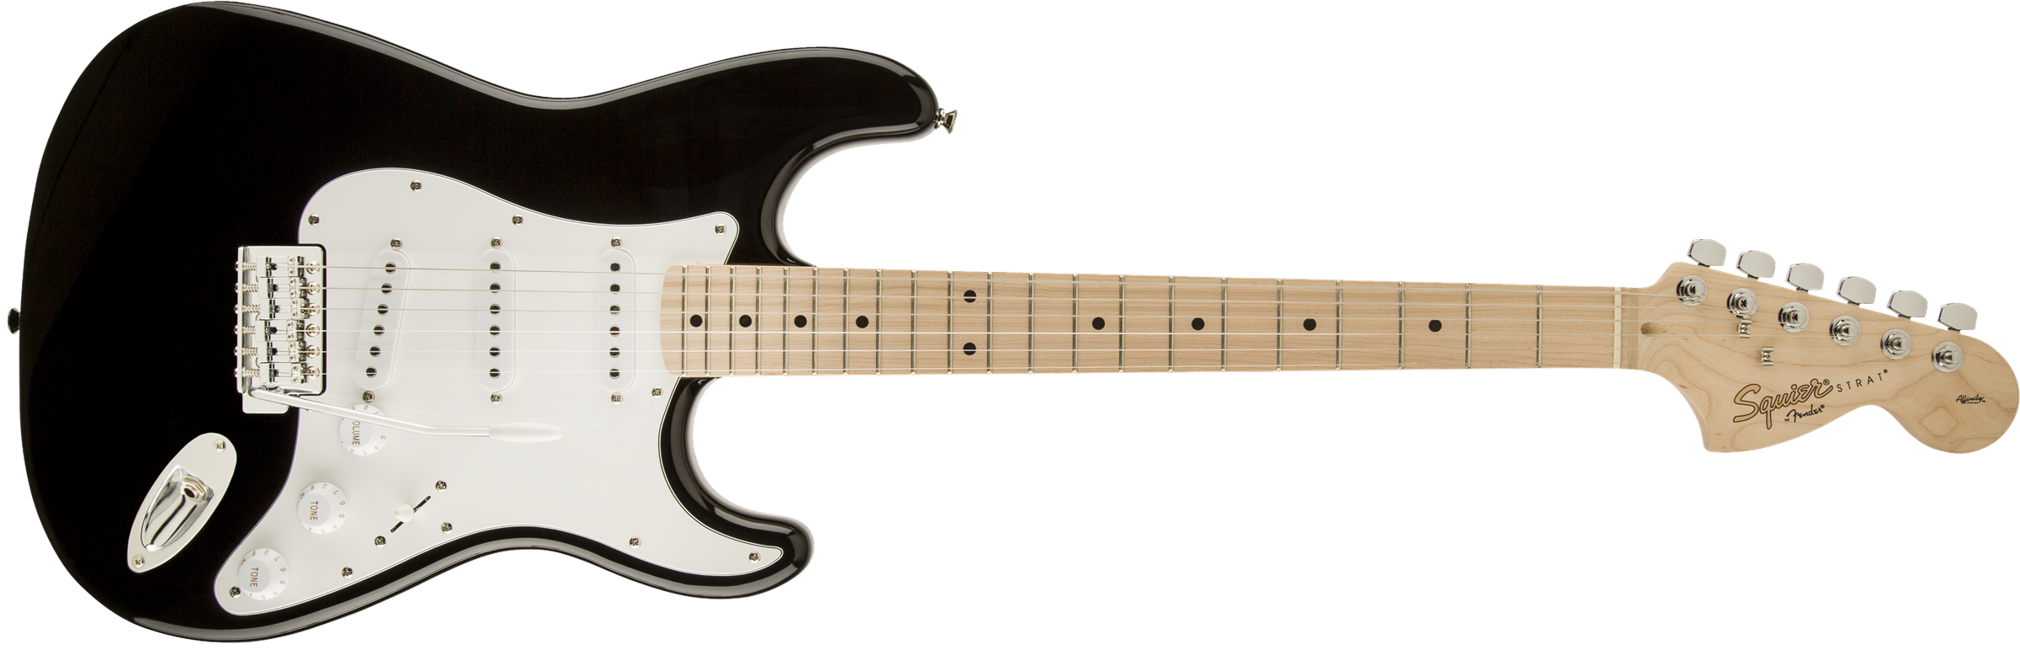 Squier By Fender - Affinity Stratocaster - Elektrisk Guitar (Sort Med Ahorn Gribebræt)